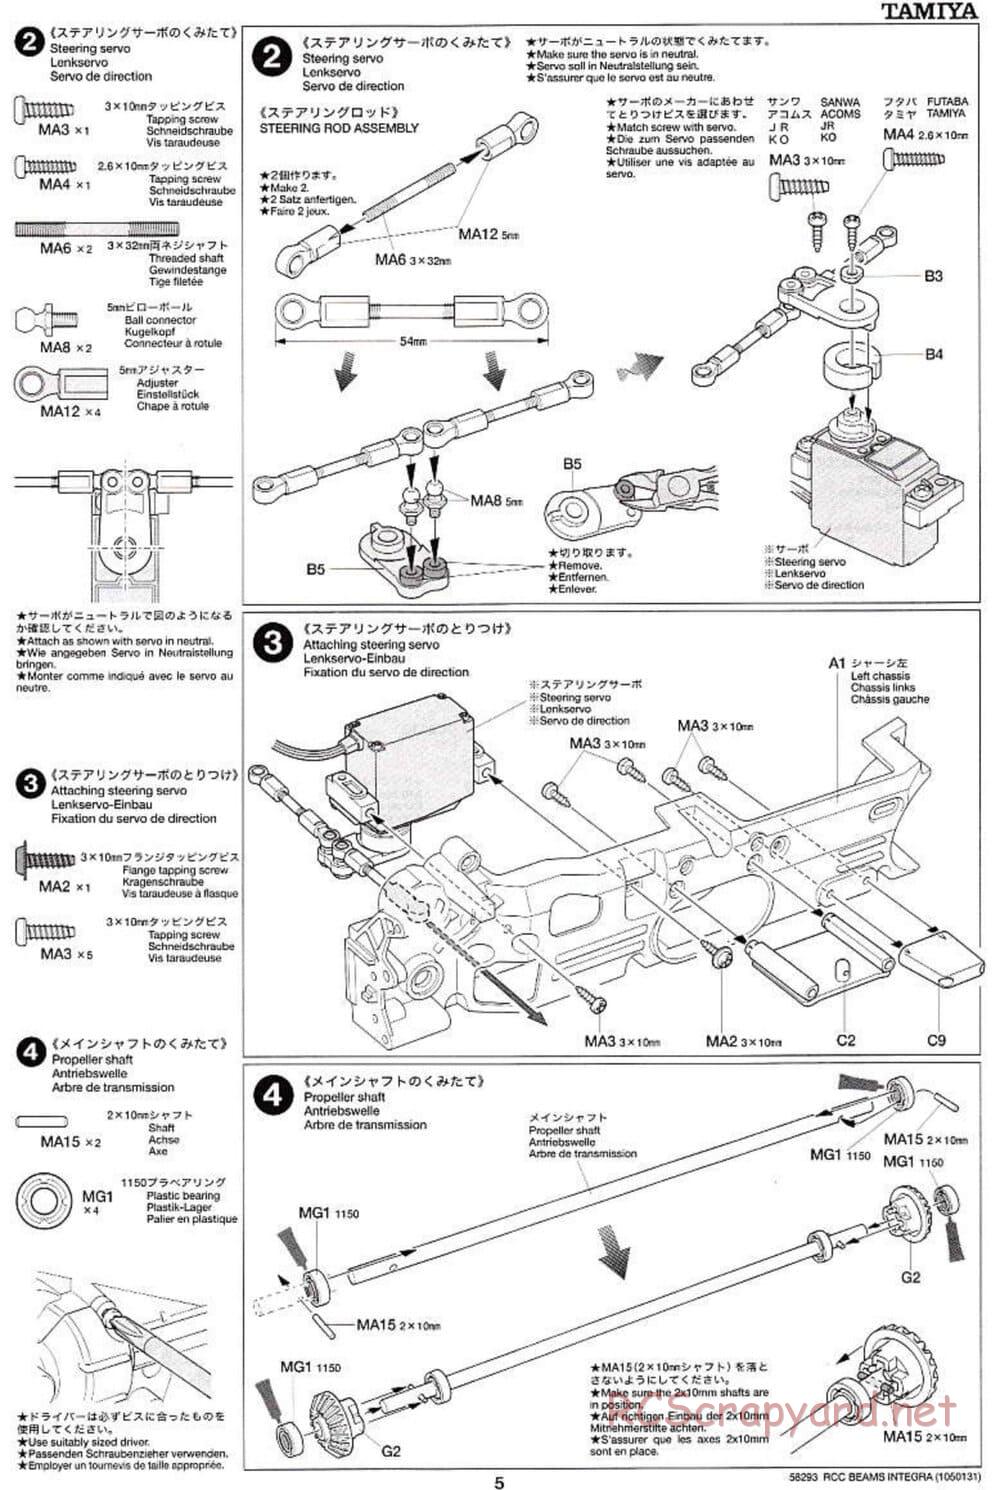 Tamiya - Beams Integra - TL-01 LA Chassis - Manual - Page 5